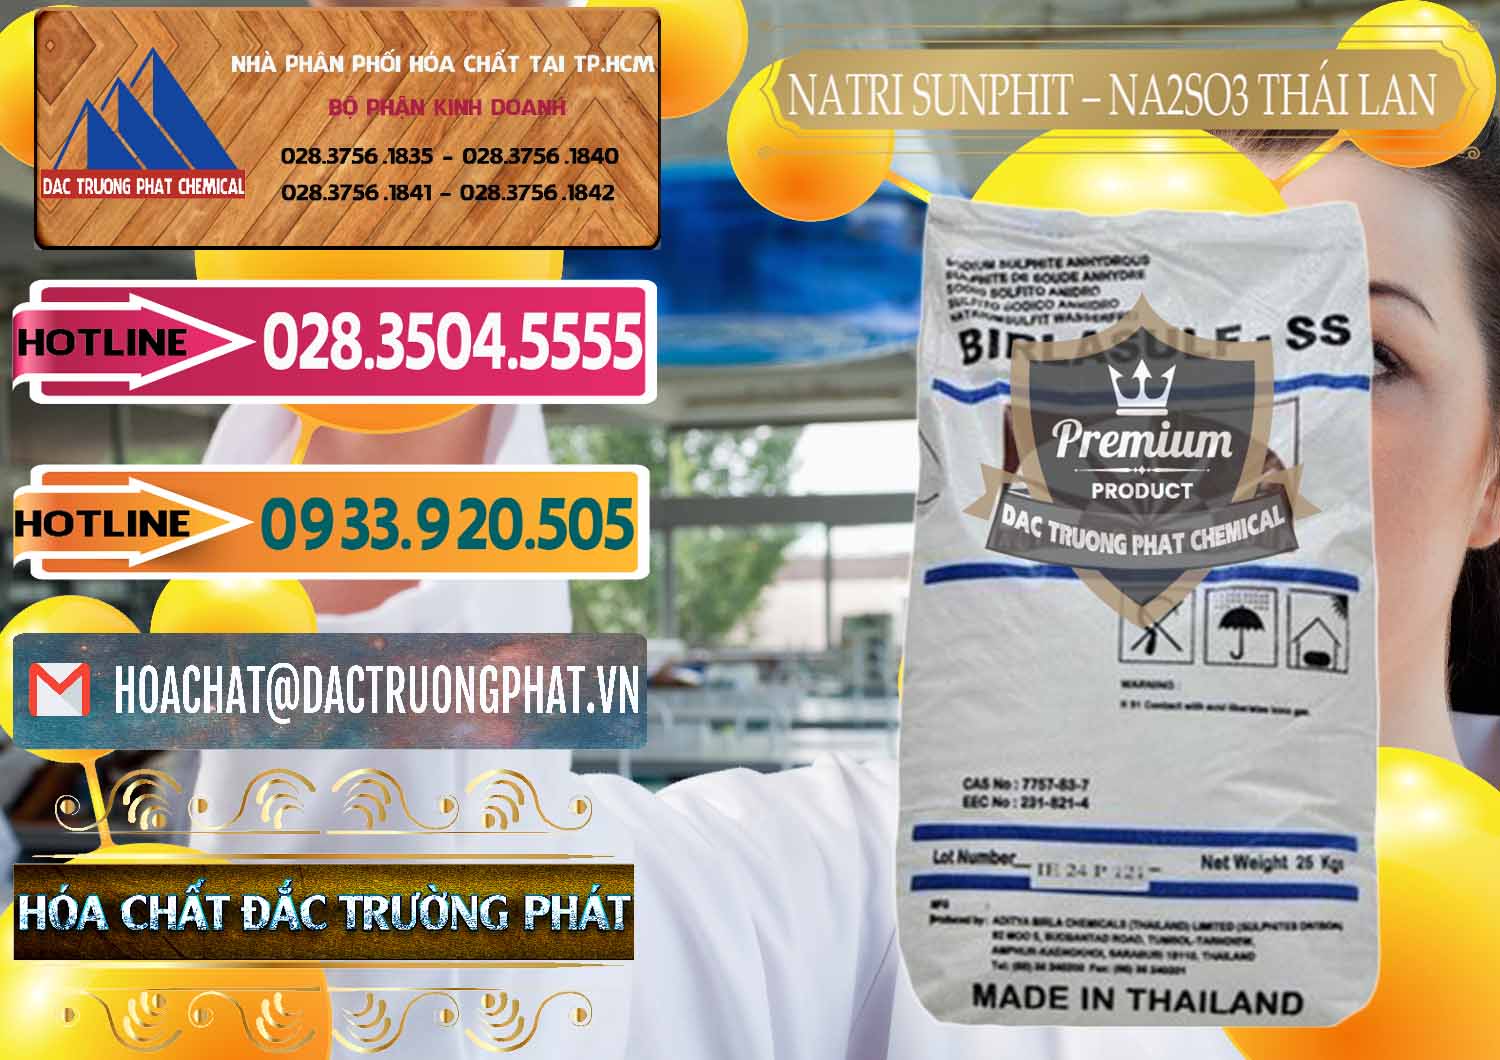 Nơi bán & phân phối Natri Sunphit - NA2SO3 Thái Lan - 0105 - Nơi chuyên nhập khẩu & phân phối hóa chất tại TP.HCM - dactruongphat.vn